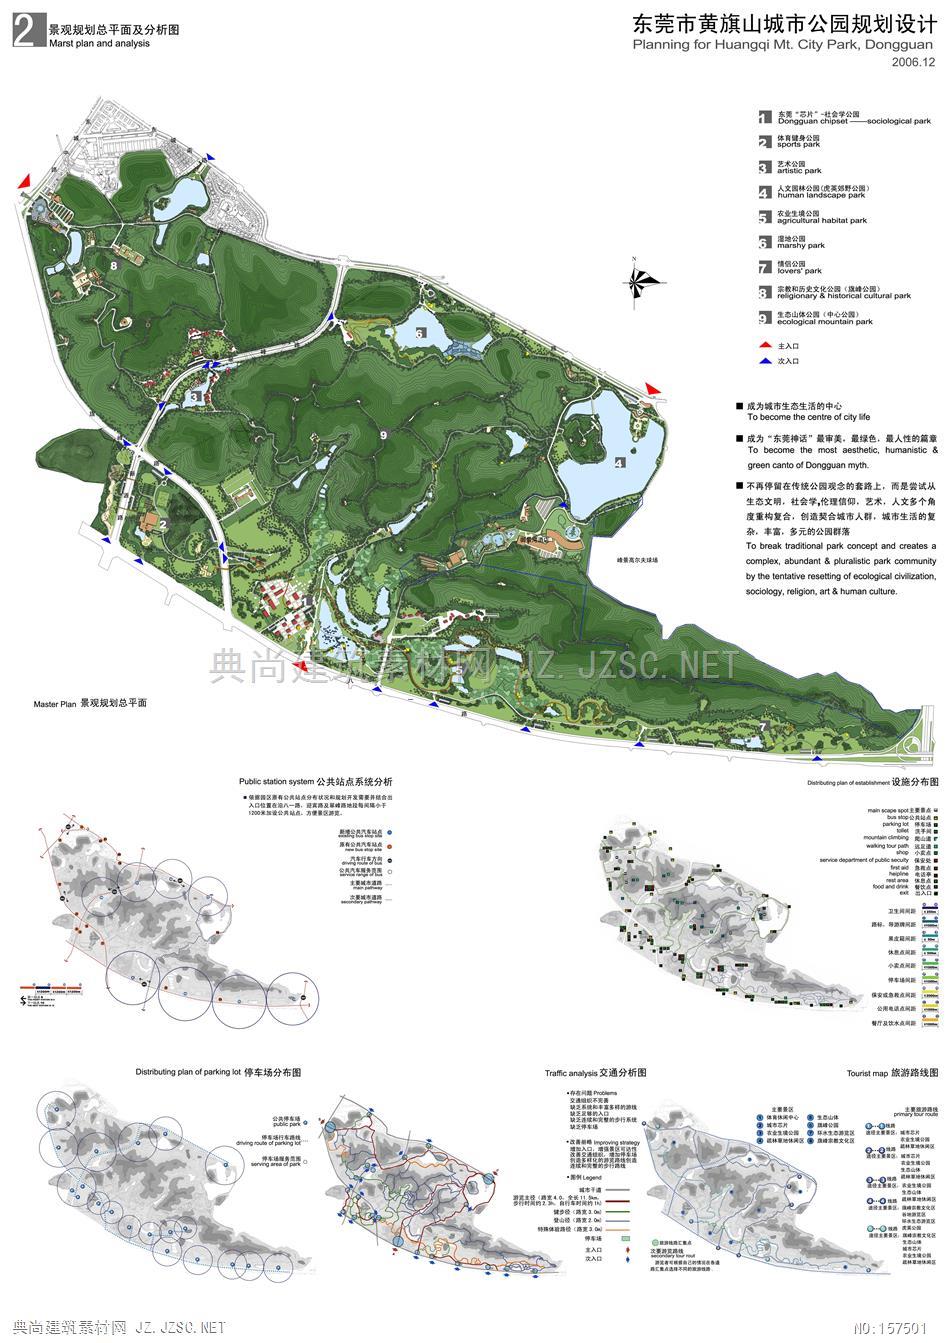 东莞市黄旗山城市公园规划设计 总平面图